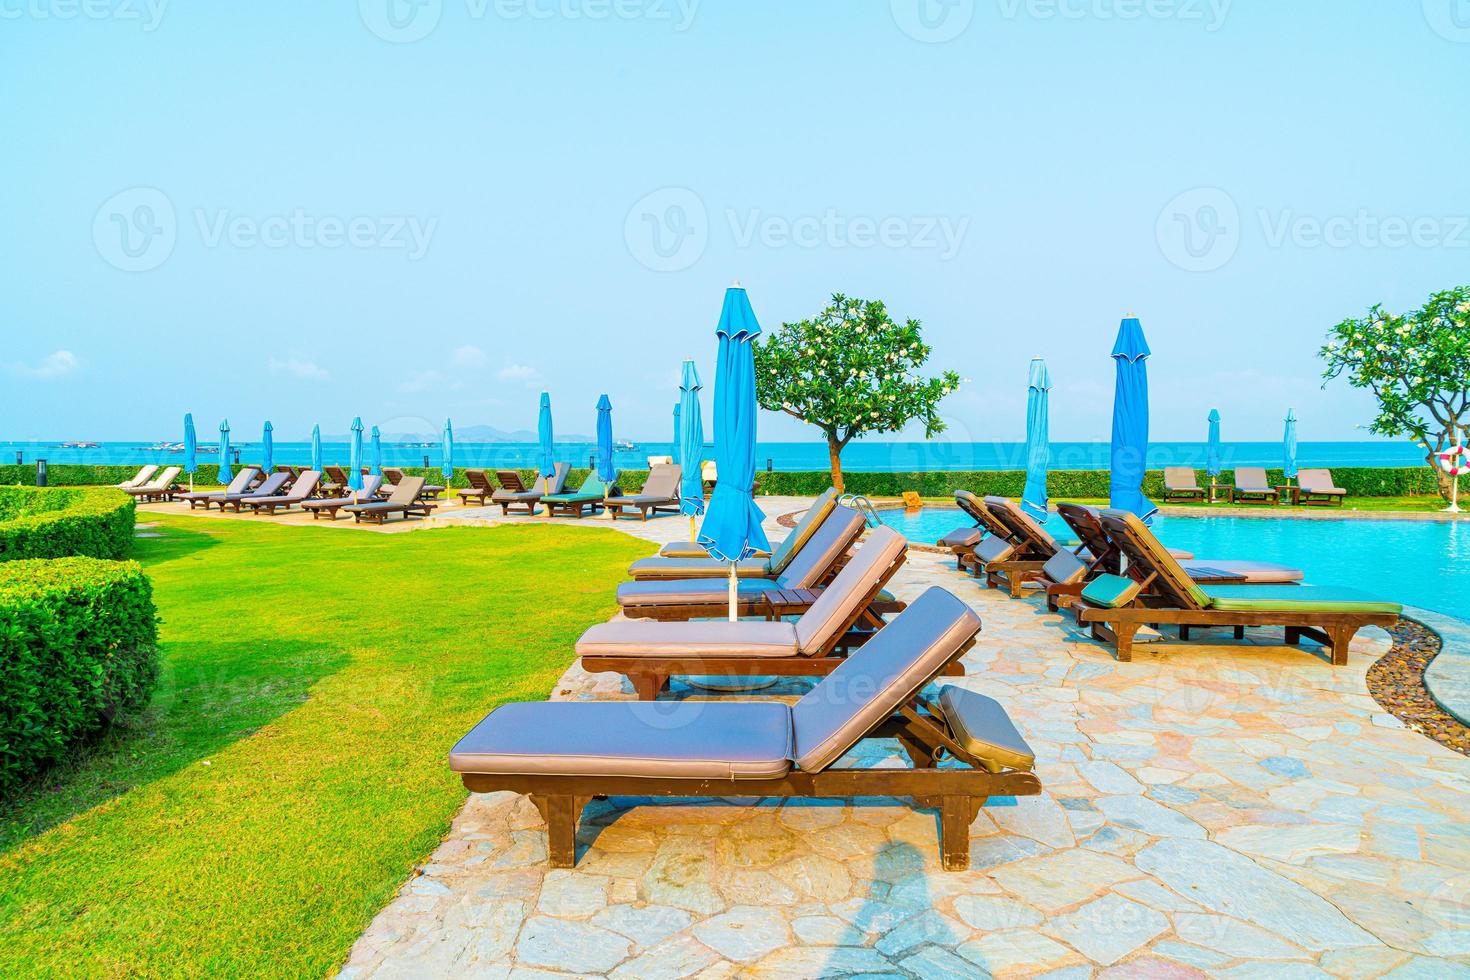 stoelzwembaden of bedden en parasols rond het zwembad met zeeachtergrond - vakantie en vakantieconcept foto